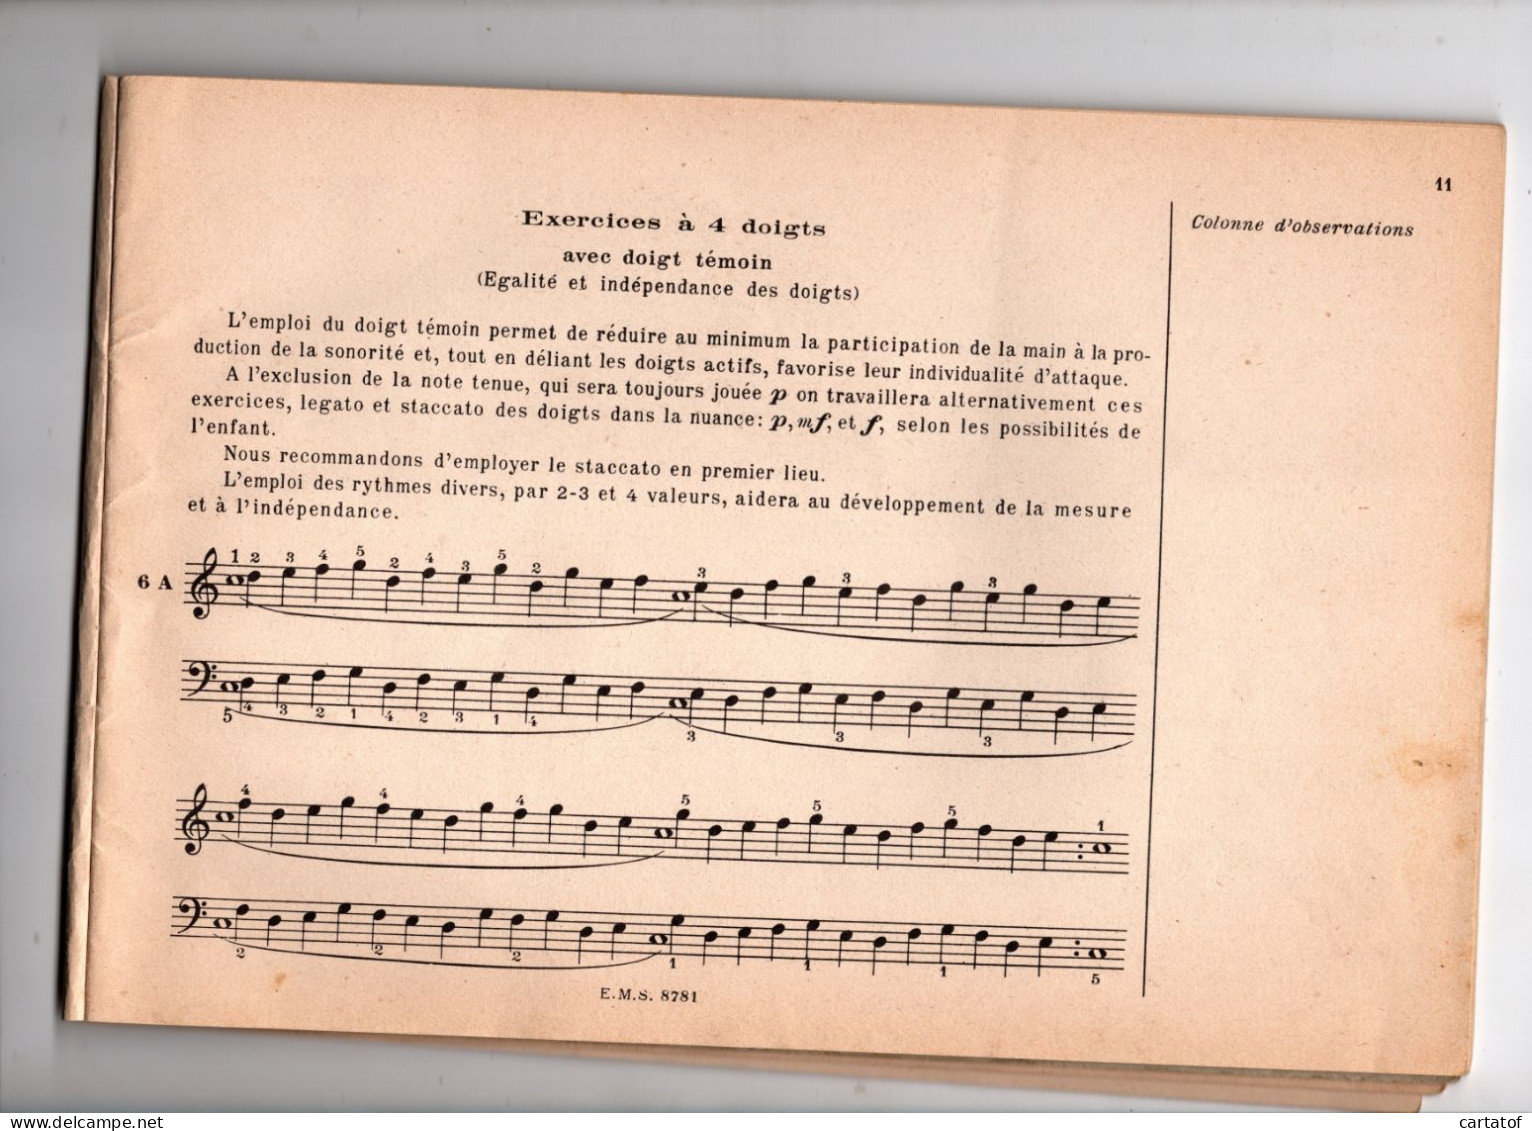 Principes Elémentaires De La Technique Pianistique . ALFRED CORTOT . JEANNE BLANCARD . Editions SALABERT - Musica